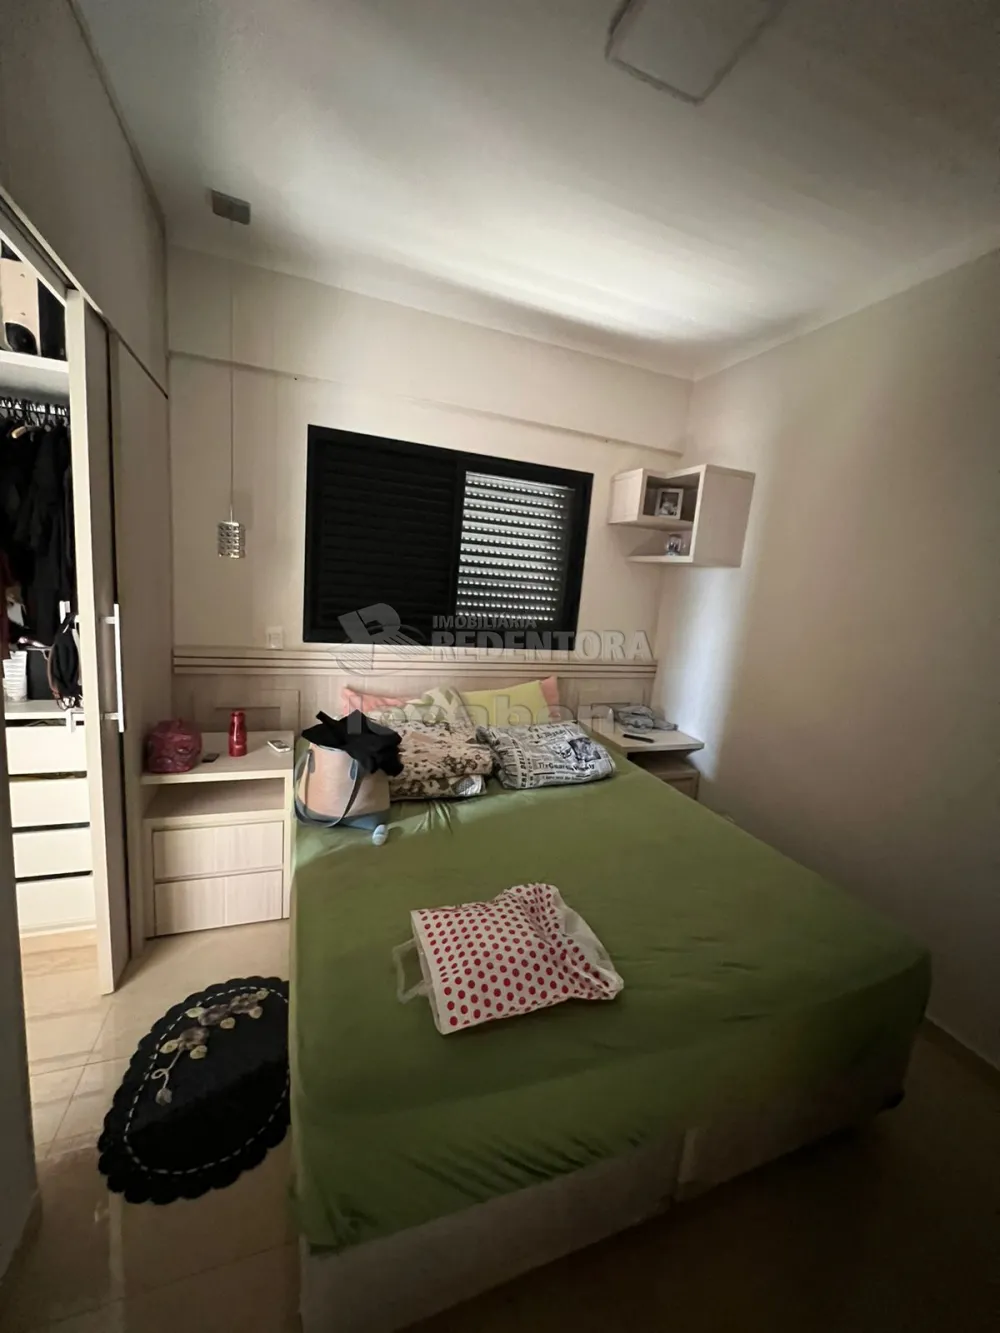 Comprar Apartamento / Padrão em São José do Rio Preto R$ 460.000,00 - Foto 13